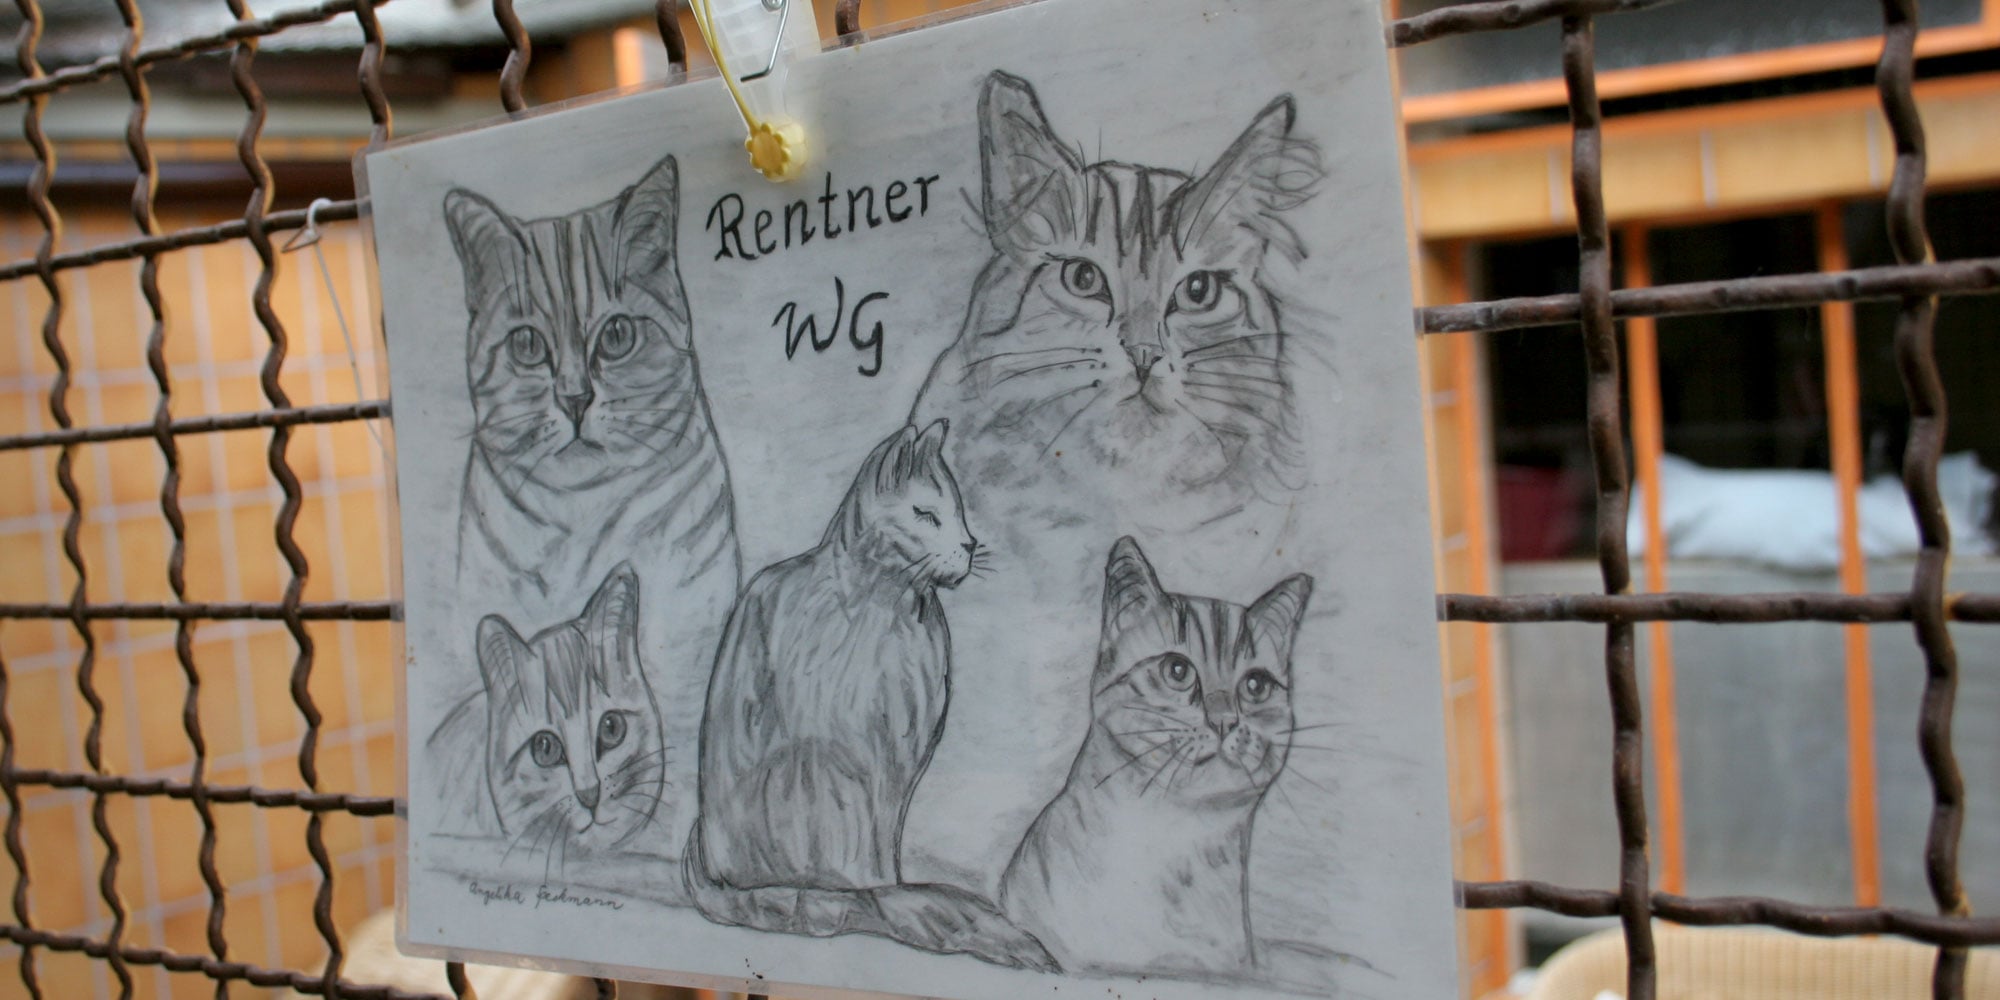 Rentner-WG im Tierheim des Frankfurter Katzenschutzvereins